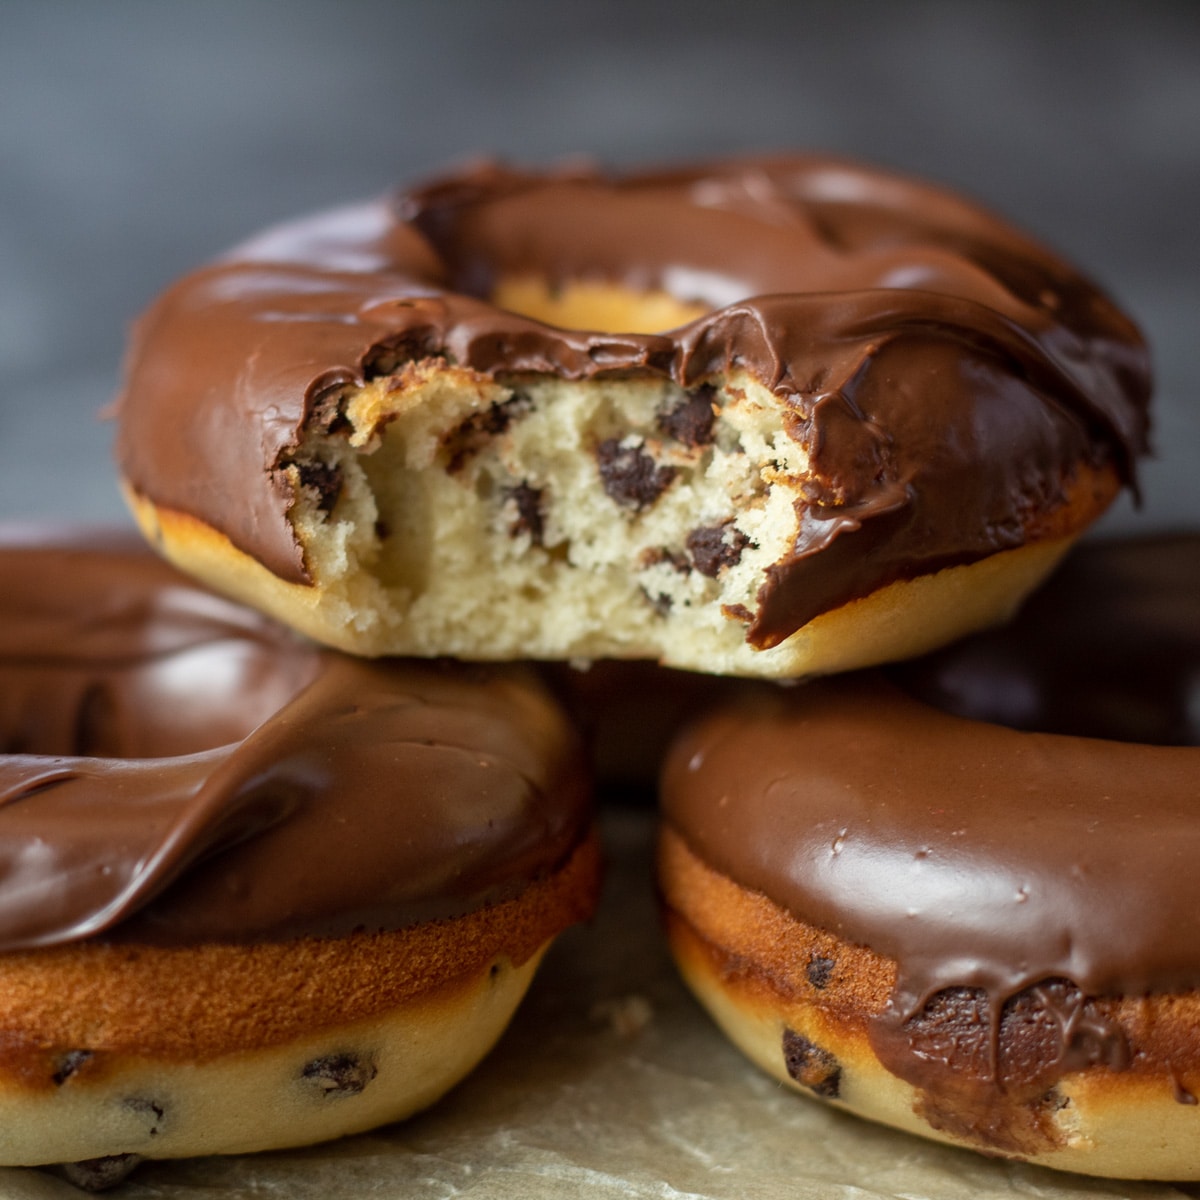 Vierkant beeld van met chocoladeschilfers gebakken donuts.